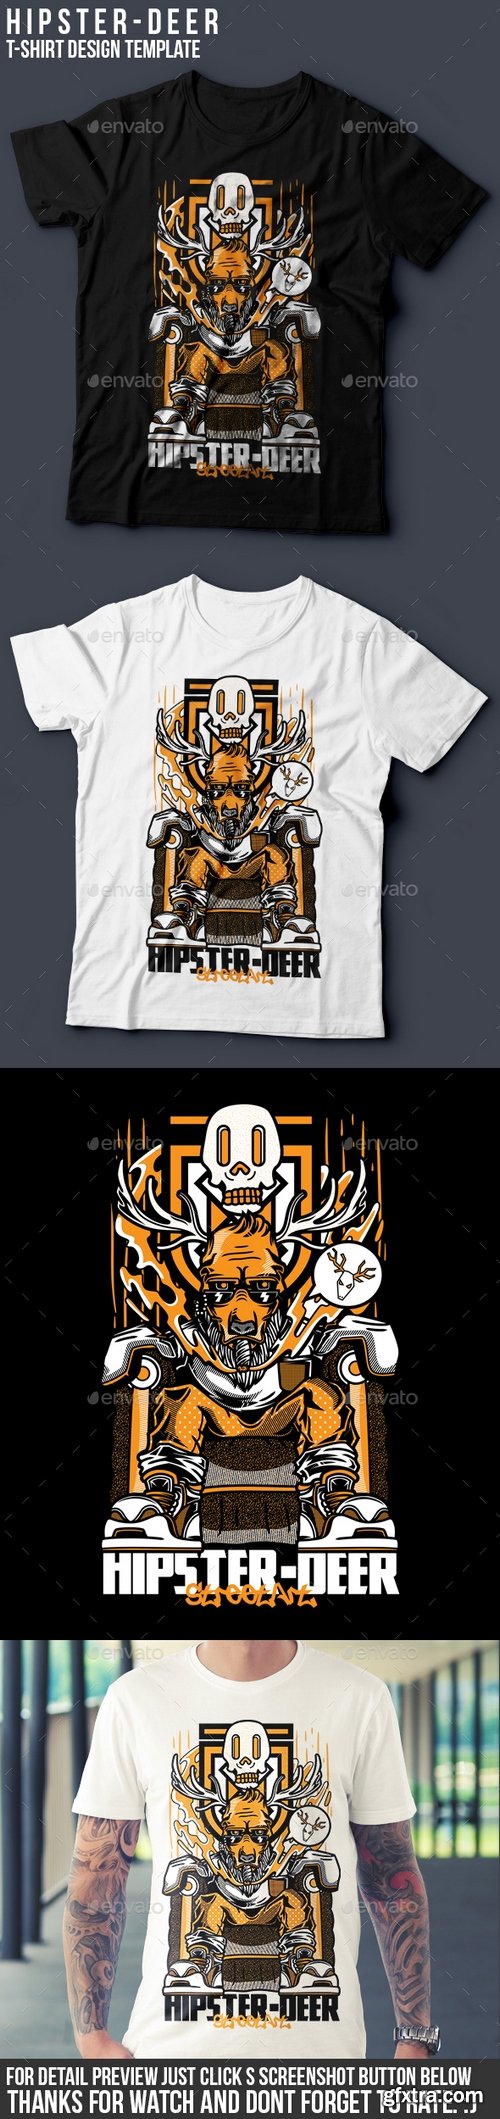 Graphicriver - Hipster-Deer T-Shirt Design 18075031